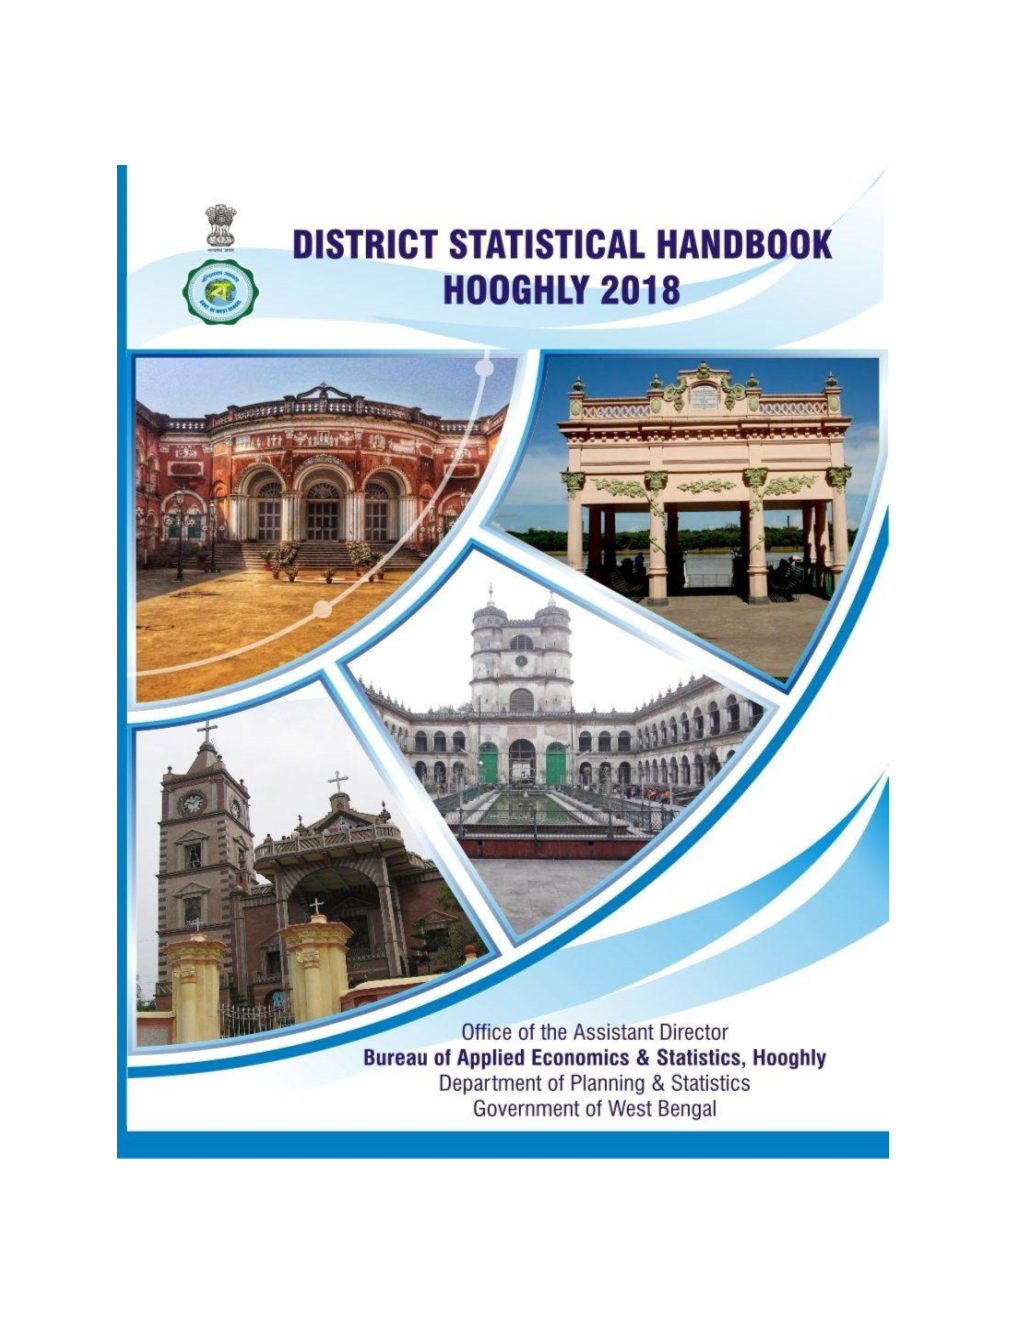 District Statistical Handbook 2018 Hooghly